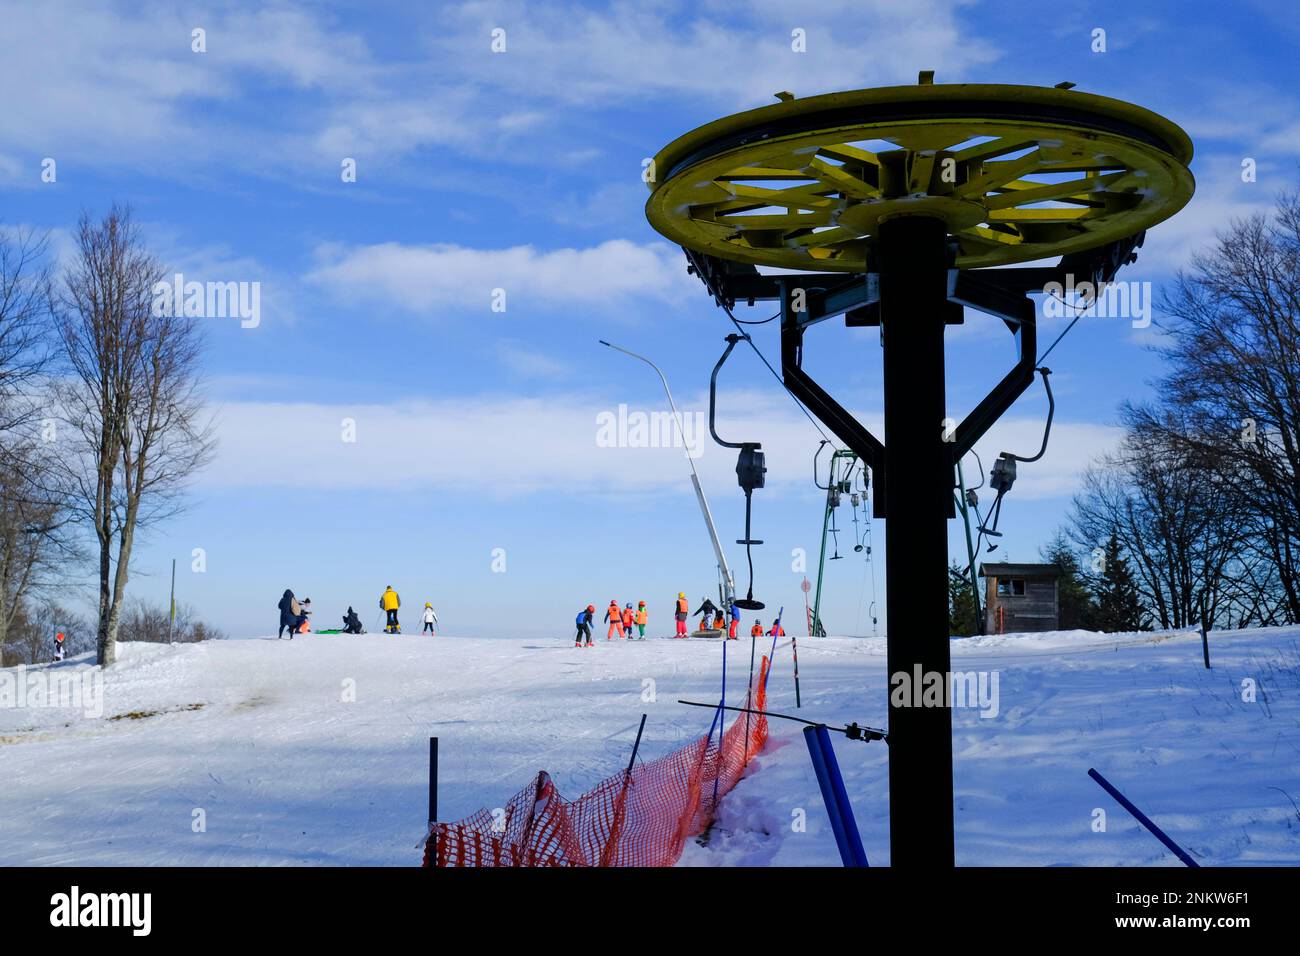 In inverno si può attraversare gli sciatori in tute colorate in cima alle montagne. Shia, Parma, Emilia-Romagna, Italia. Vacanze invernali Foto Stock